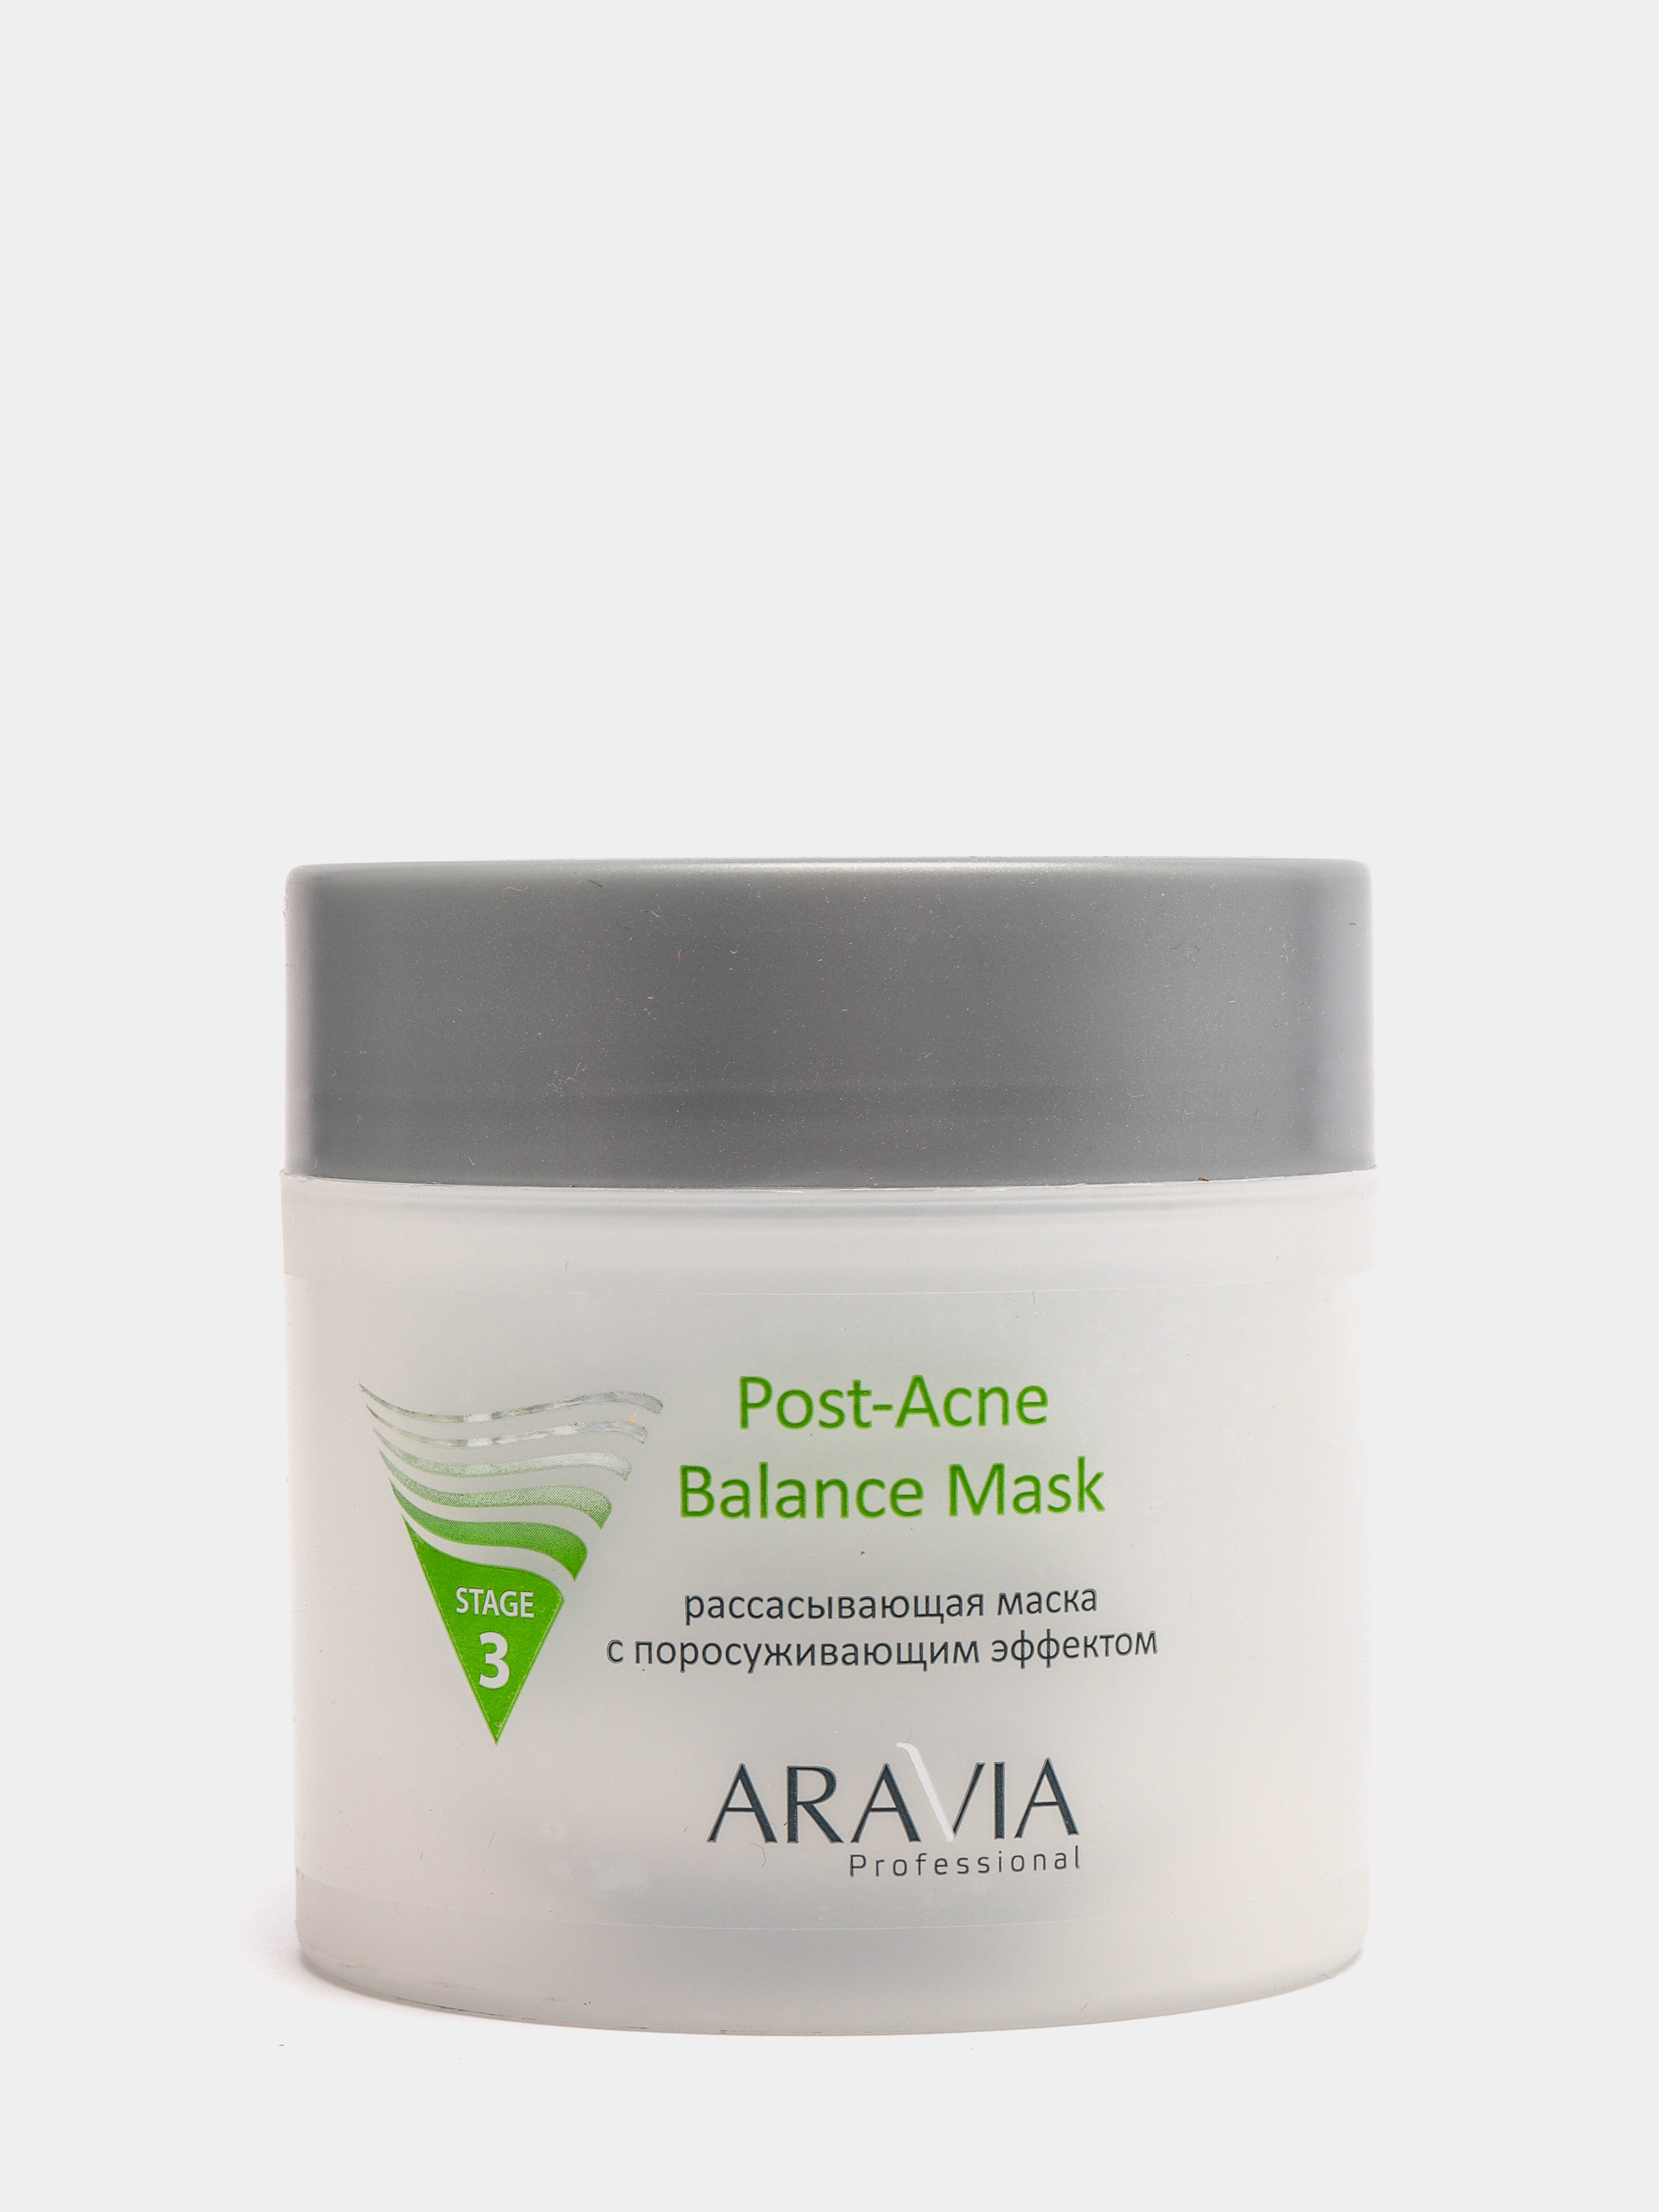 Aravia Post acne Balance Mask. Аравия рассасывающая маска с поросуживающим эффектом. Post acne маска. Маска для лица с ментолом Аравия.